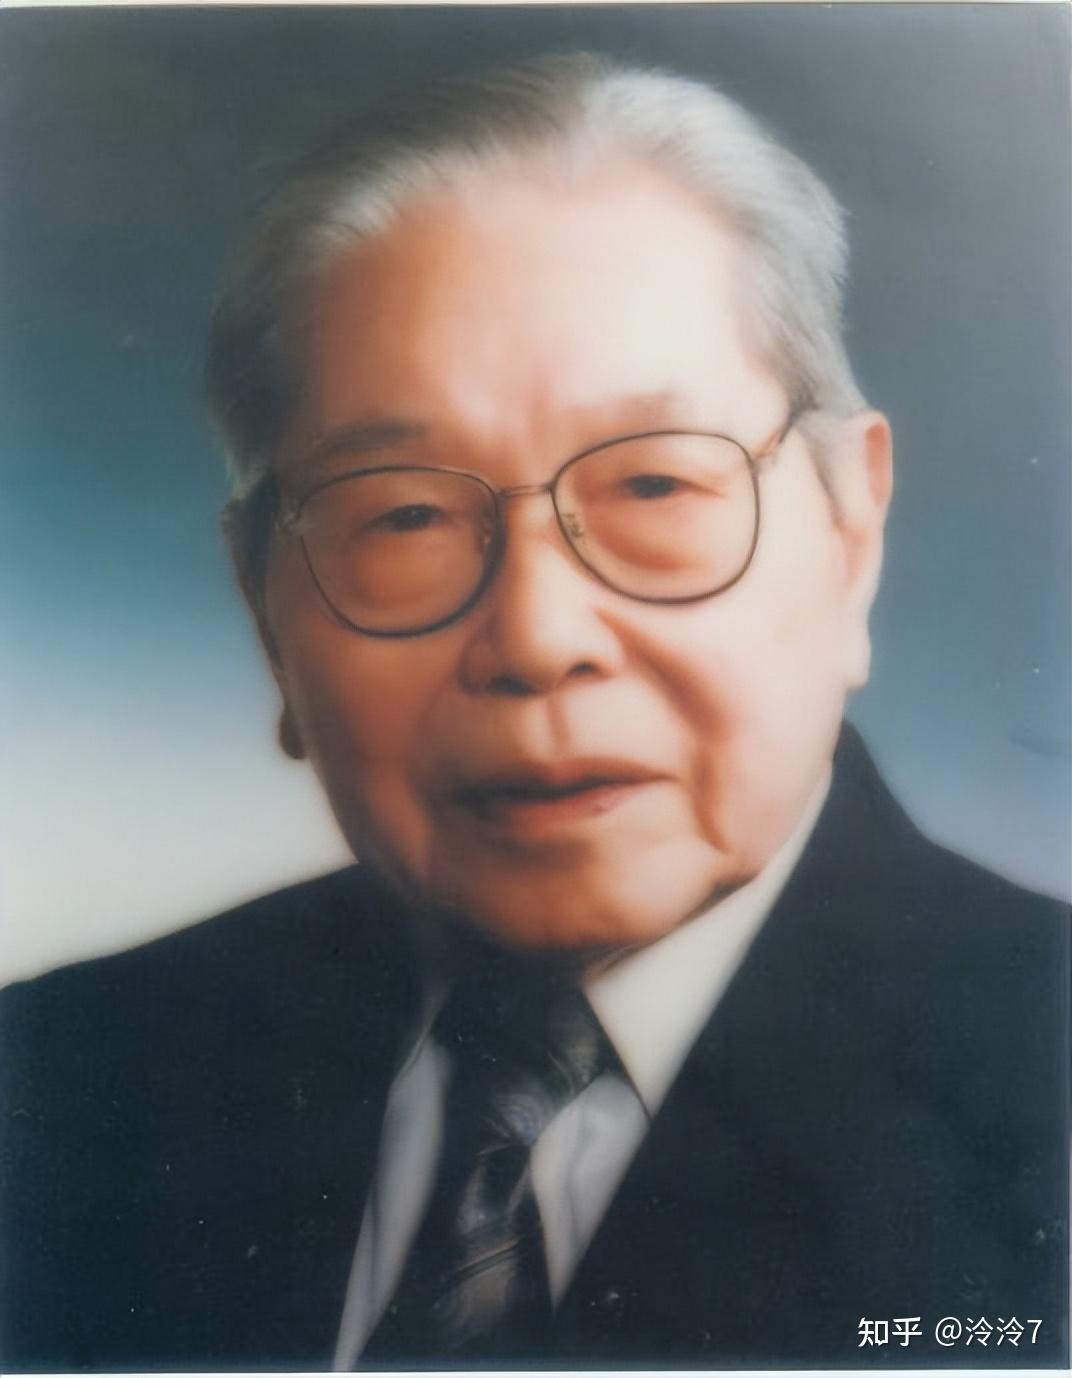 周俊院士(1999年当选)